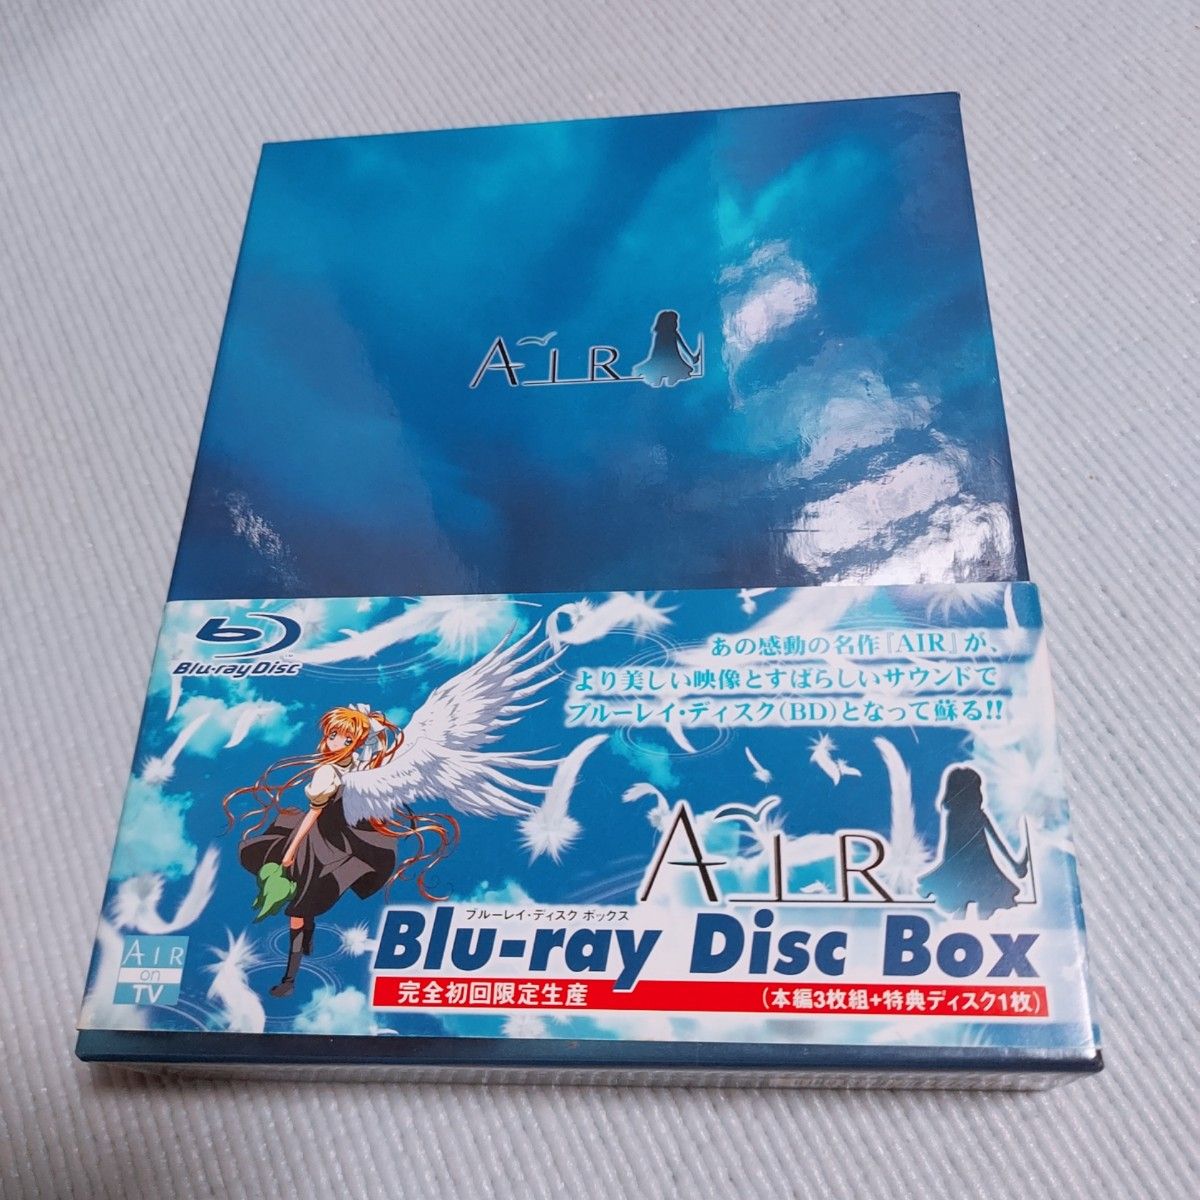 『AIR』Blu-ray Disc Box〈4枚組〉 初回限定